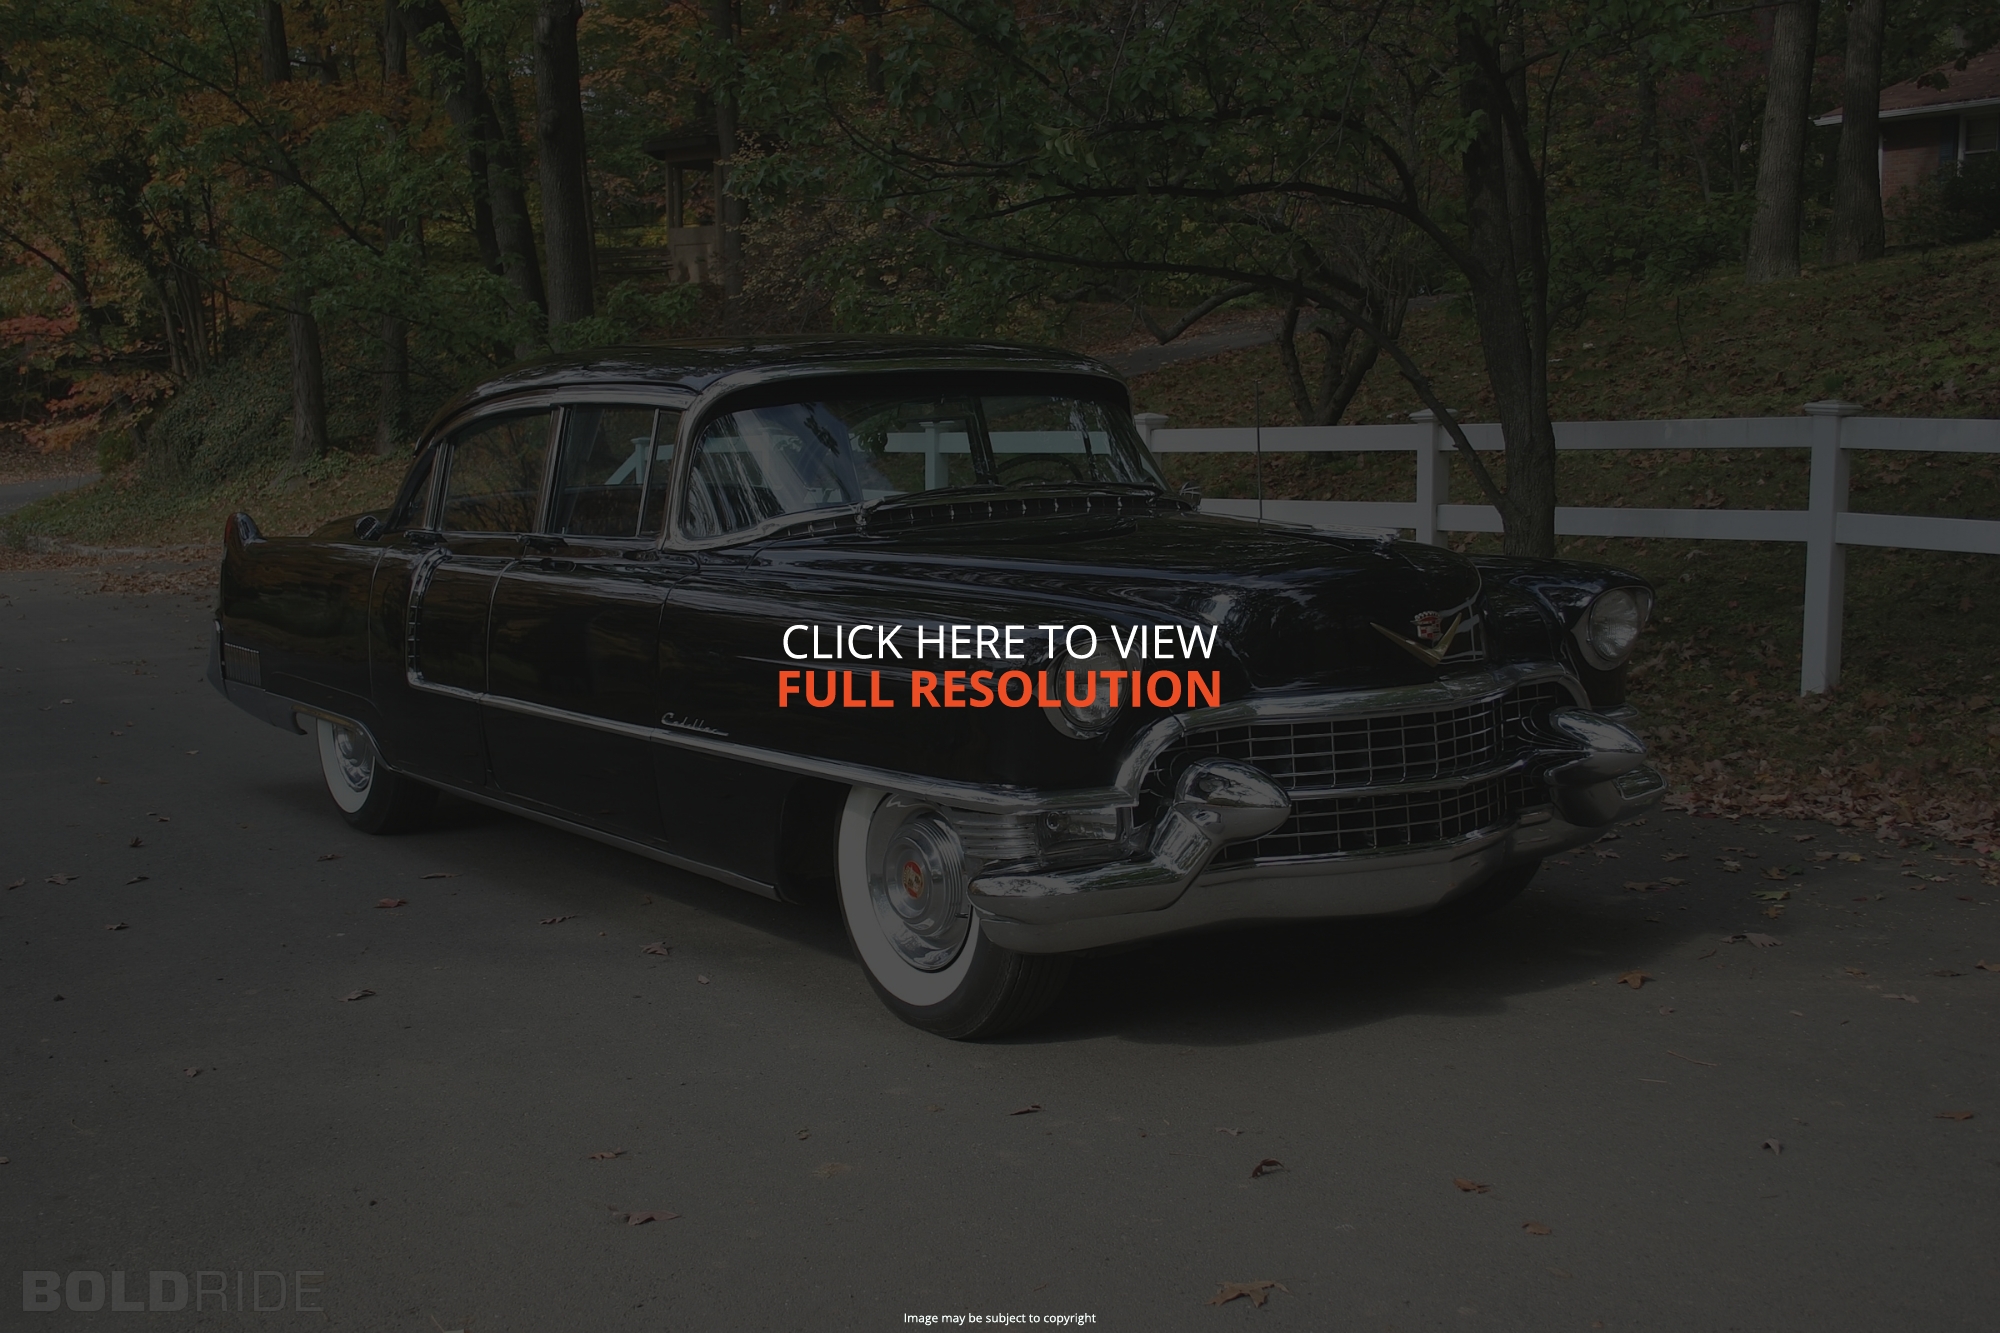 Cadillac Fleetwood 1955 #1